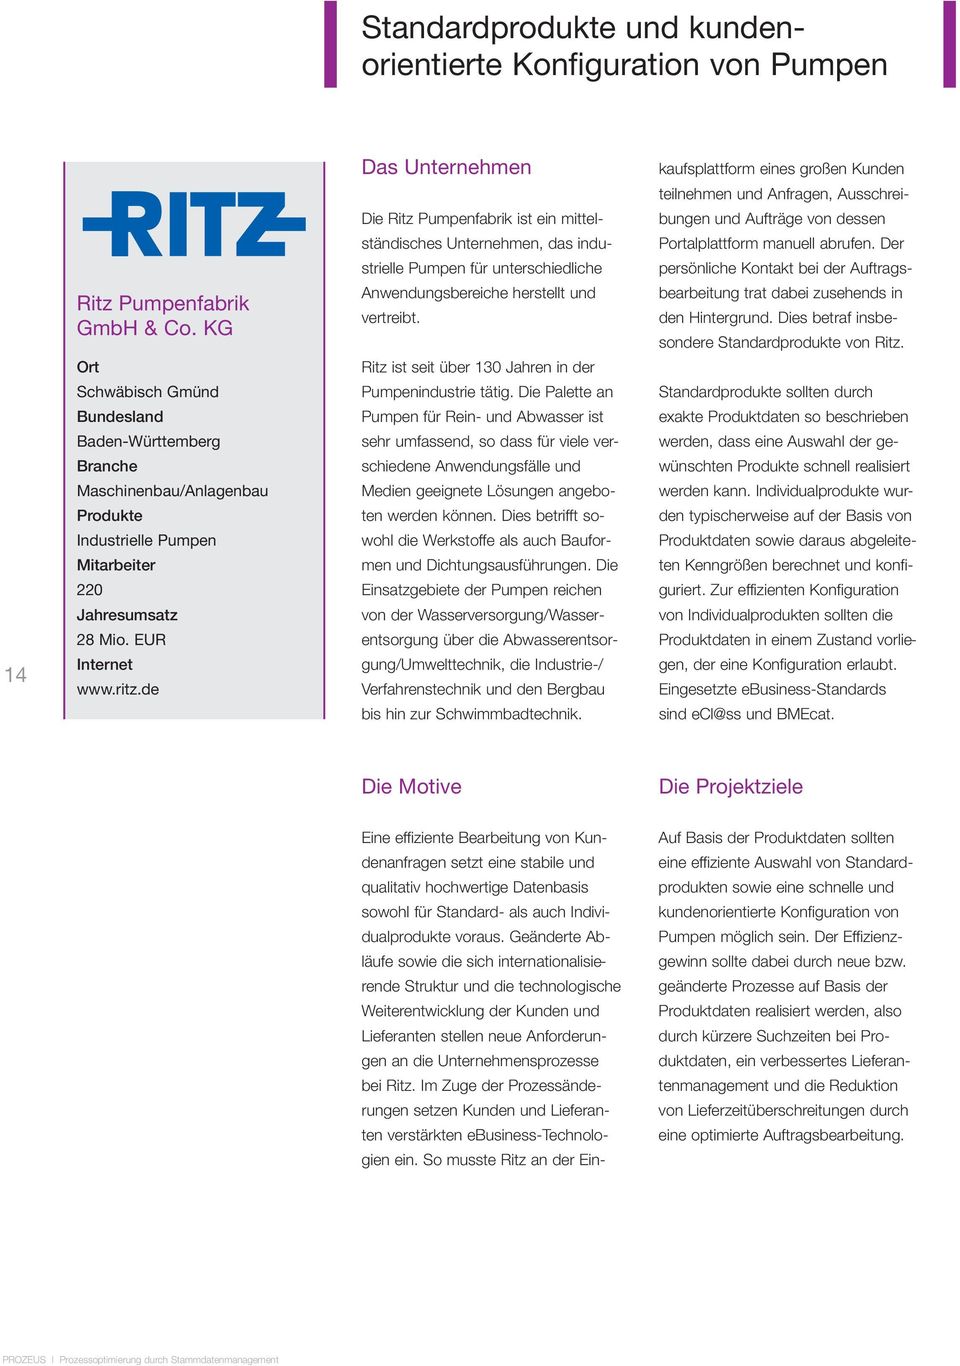 de Das Unternehmen Die Ritz Pumpenfabrik ist ein mittelständisches Unternehmen, das industrielle Pumpen für unterschiedliche Anwendungsbereiche herstellt und vertreibt.